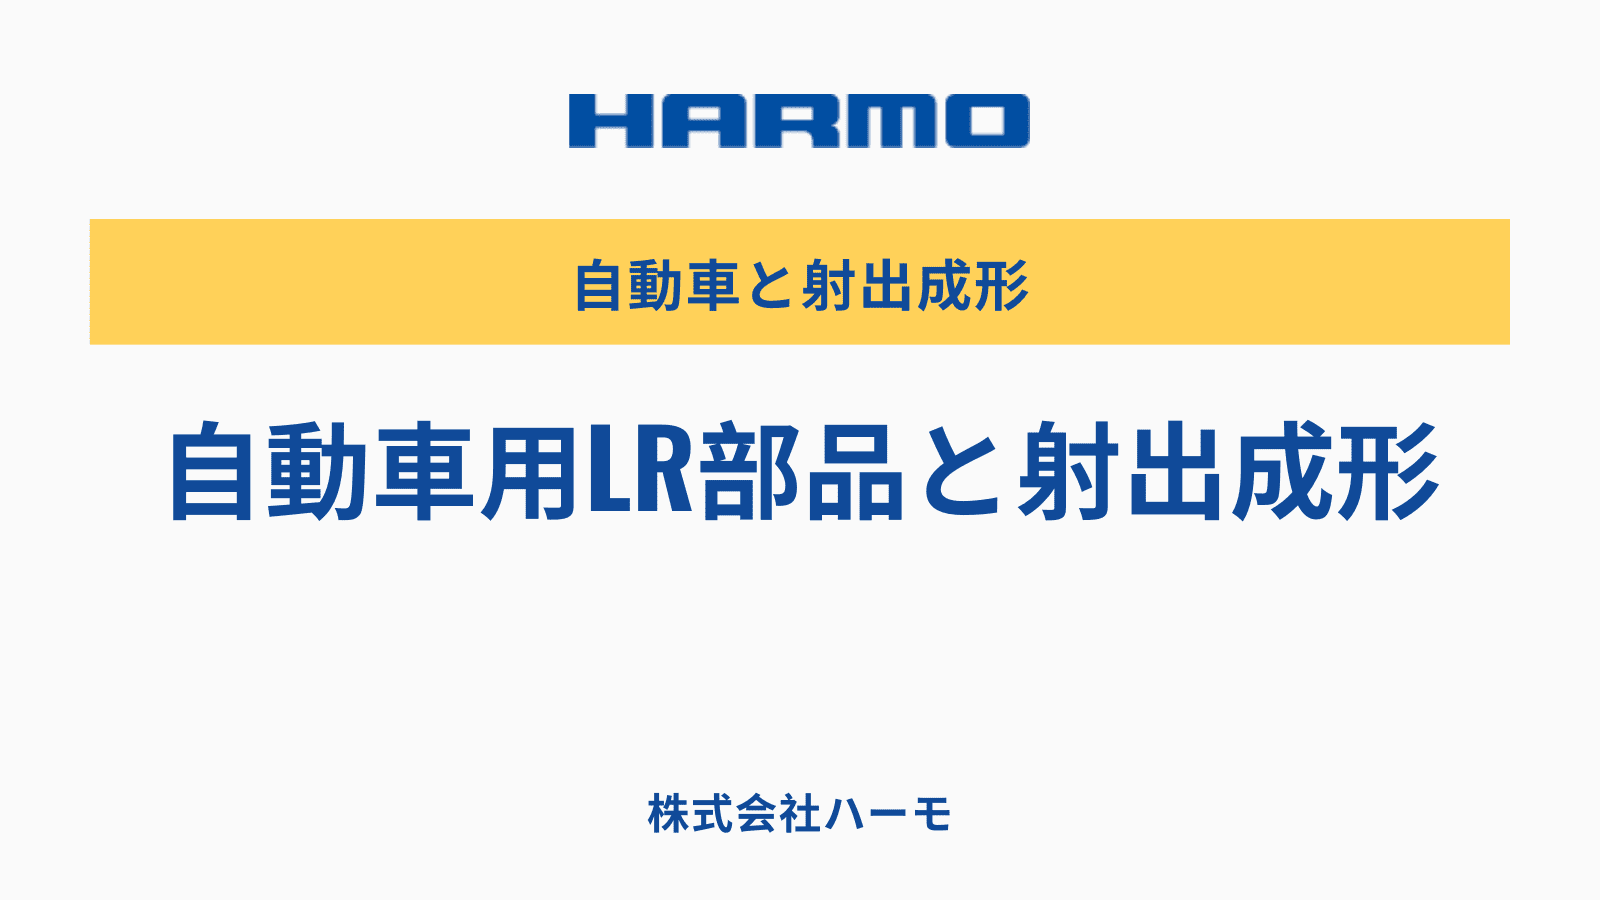 自動車用LR部品と射出成形｜射出成形周辺機器メーカー｜株式会社ハーモ